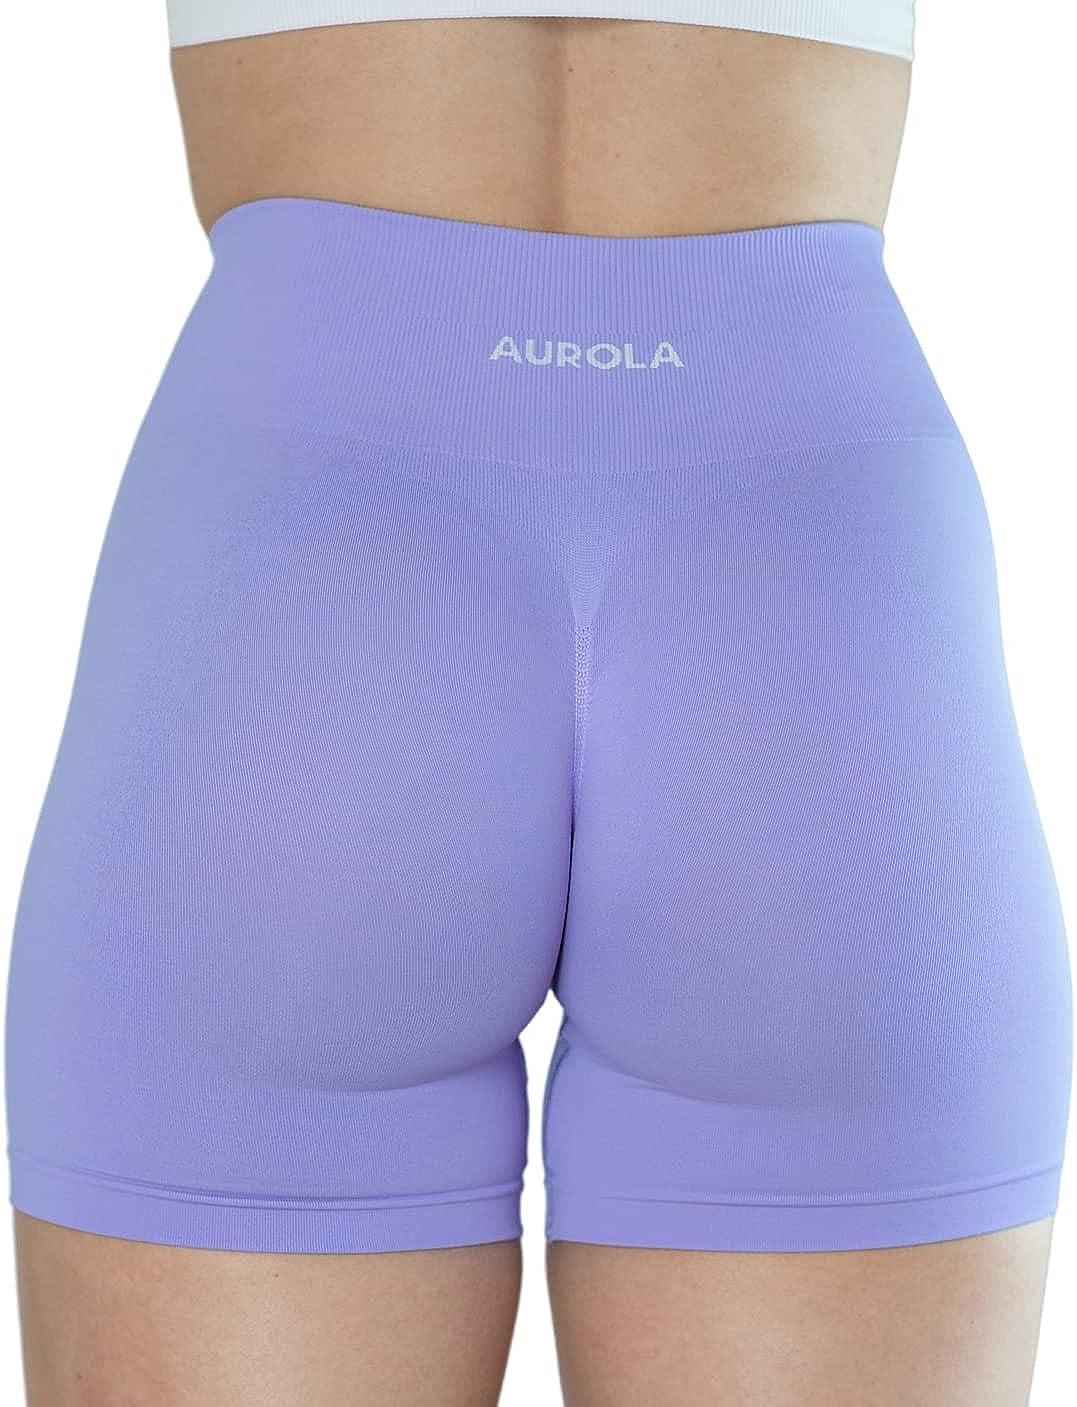 AUROLA Dream Collection Workout Shorts for Women High Waist